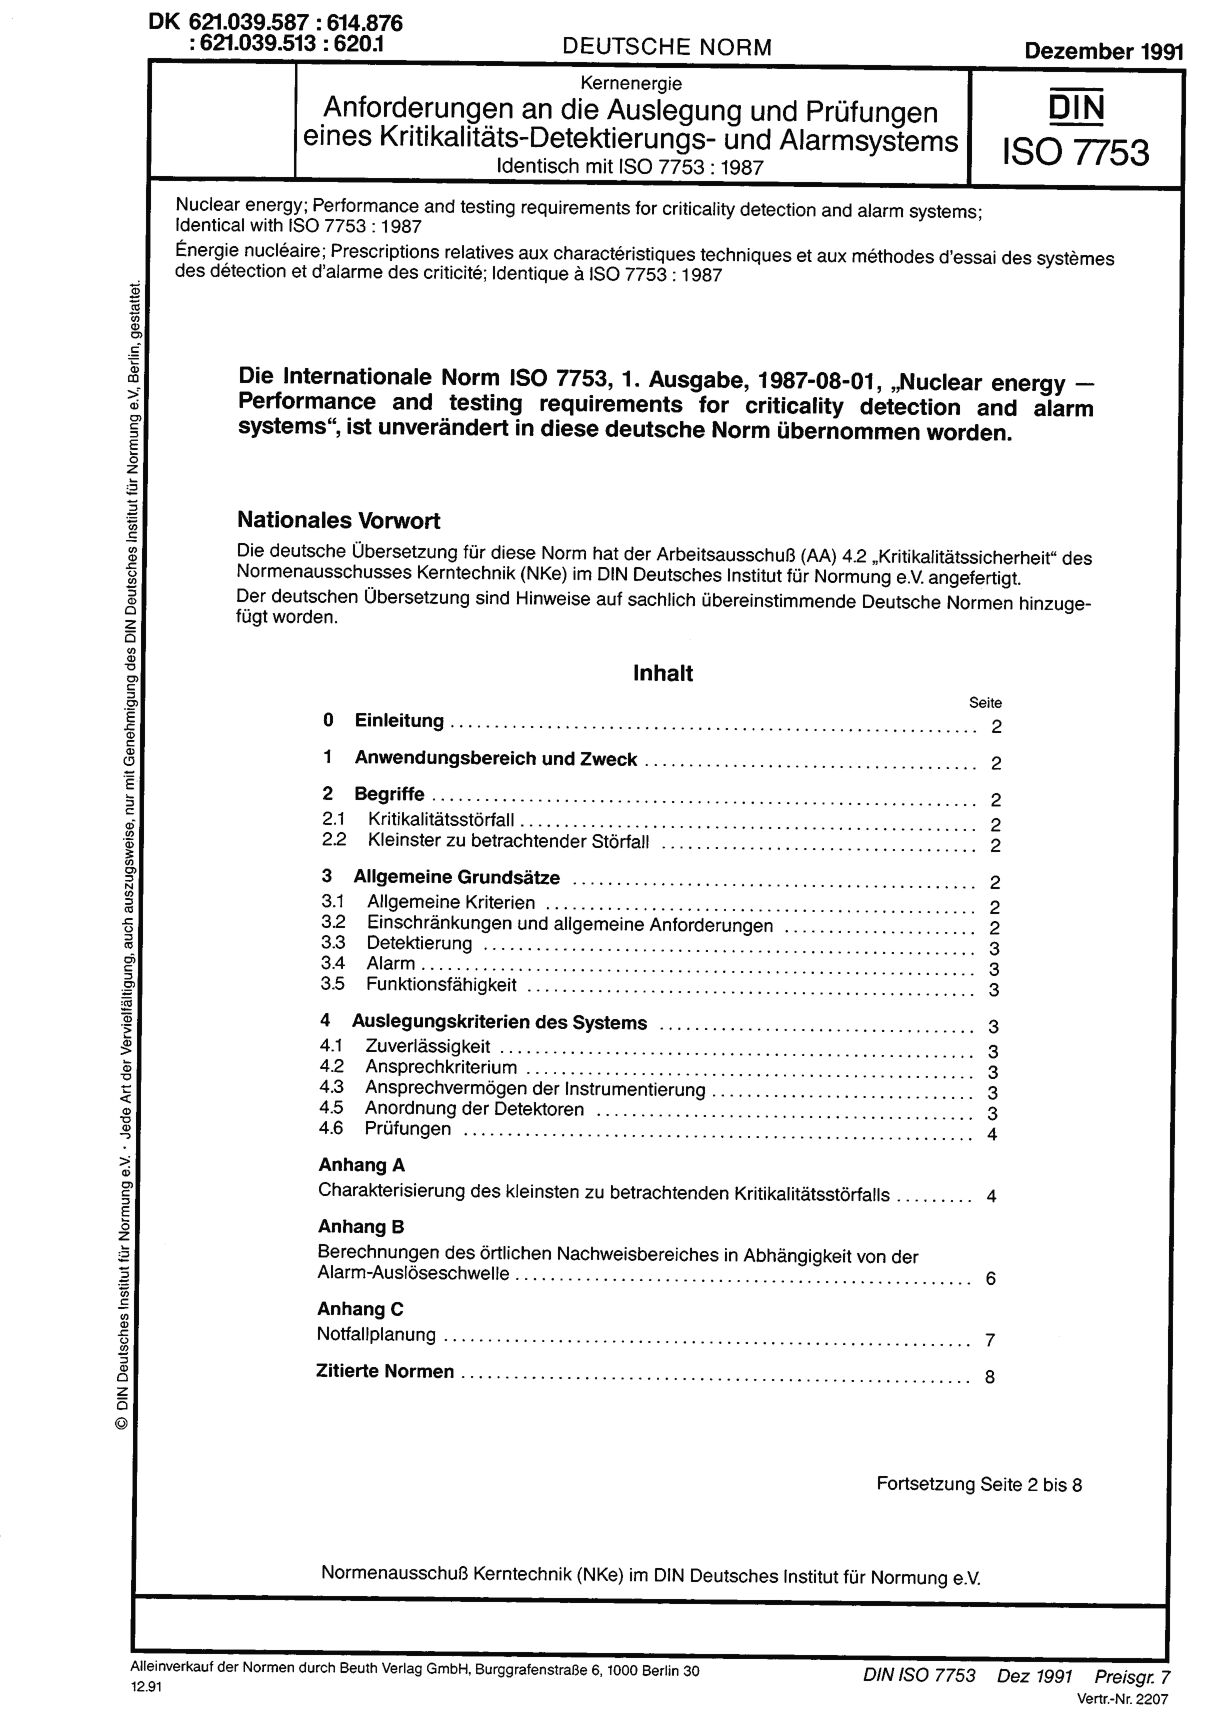 DIN ISO 7753:1991封面图